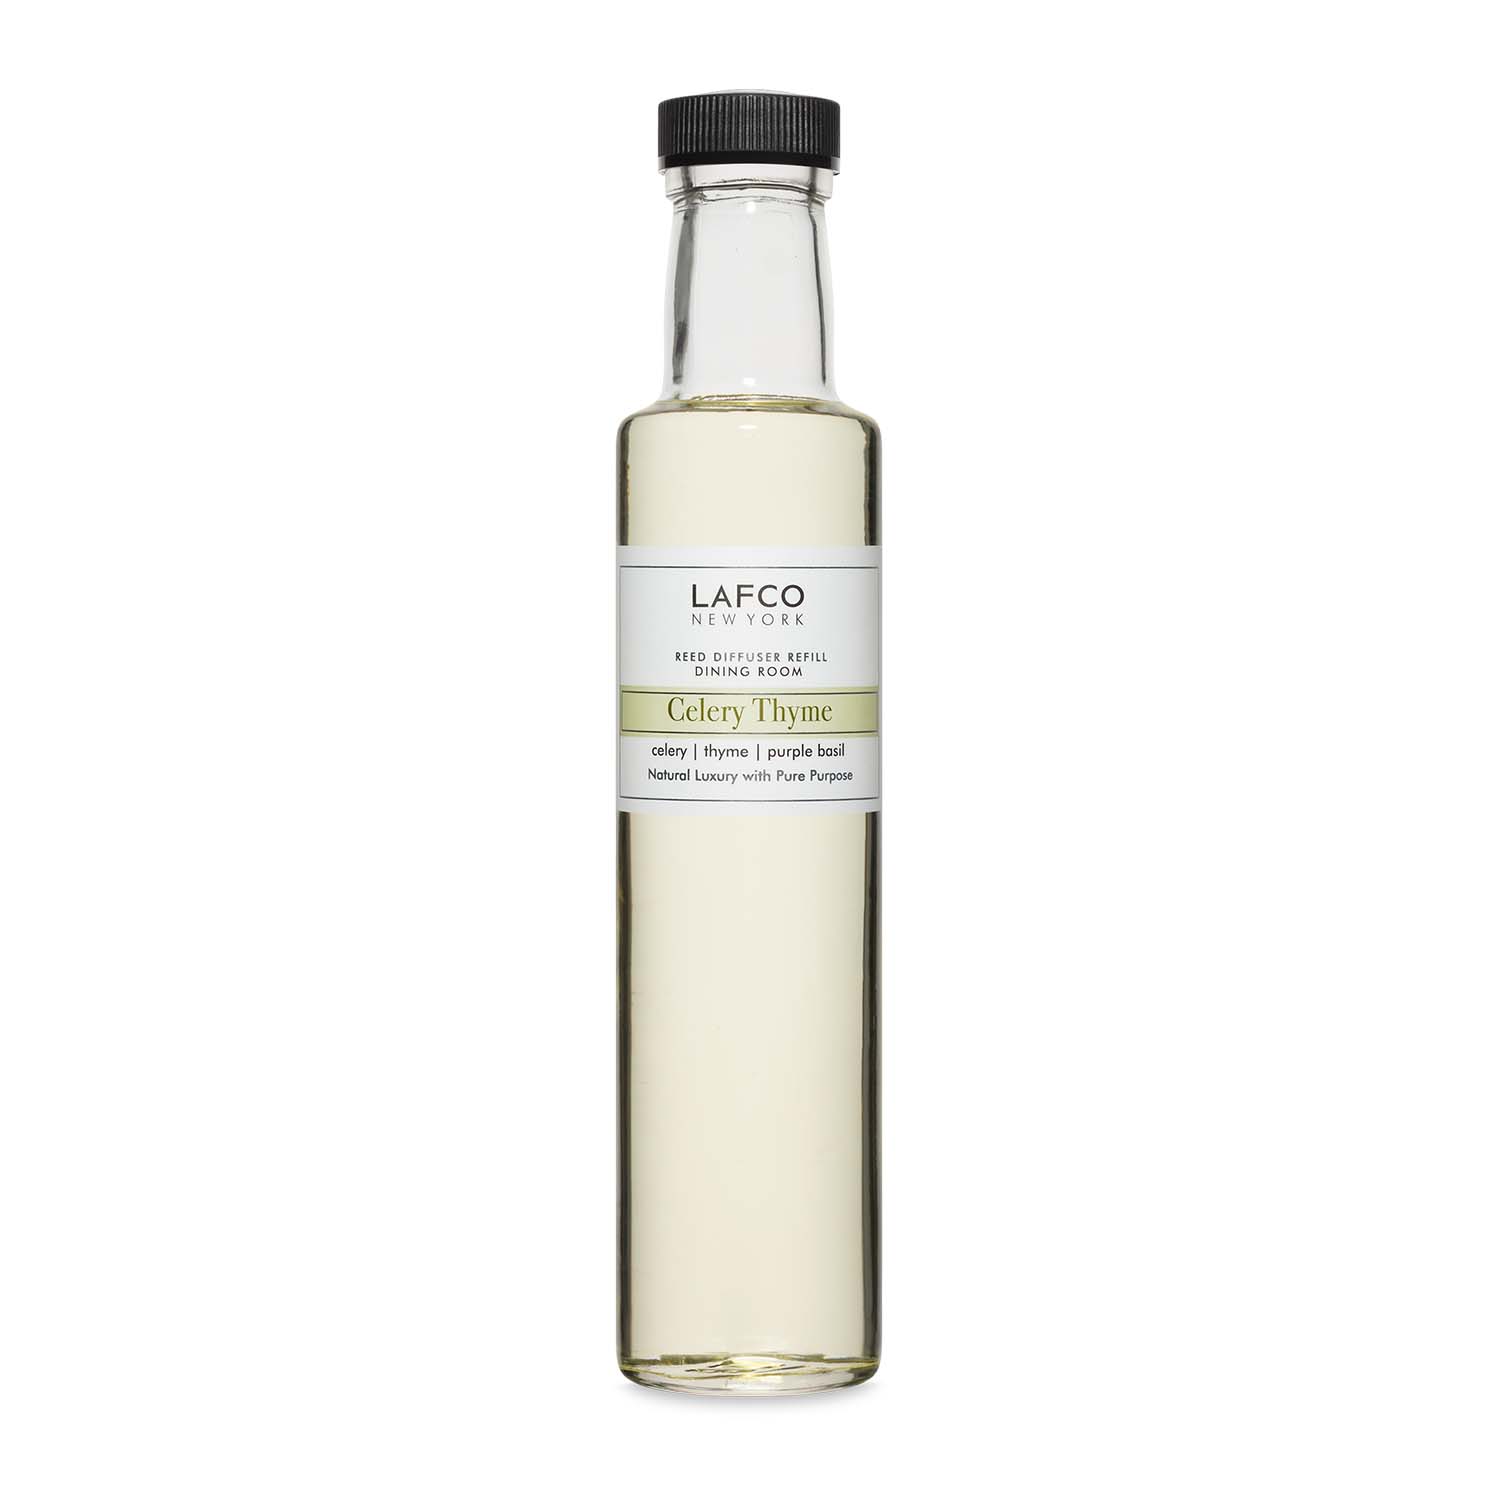 Lafco Diffuser Refill, Celery Thyme, 8.4 fl. oz.